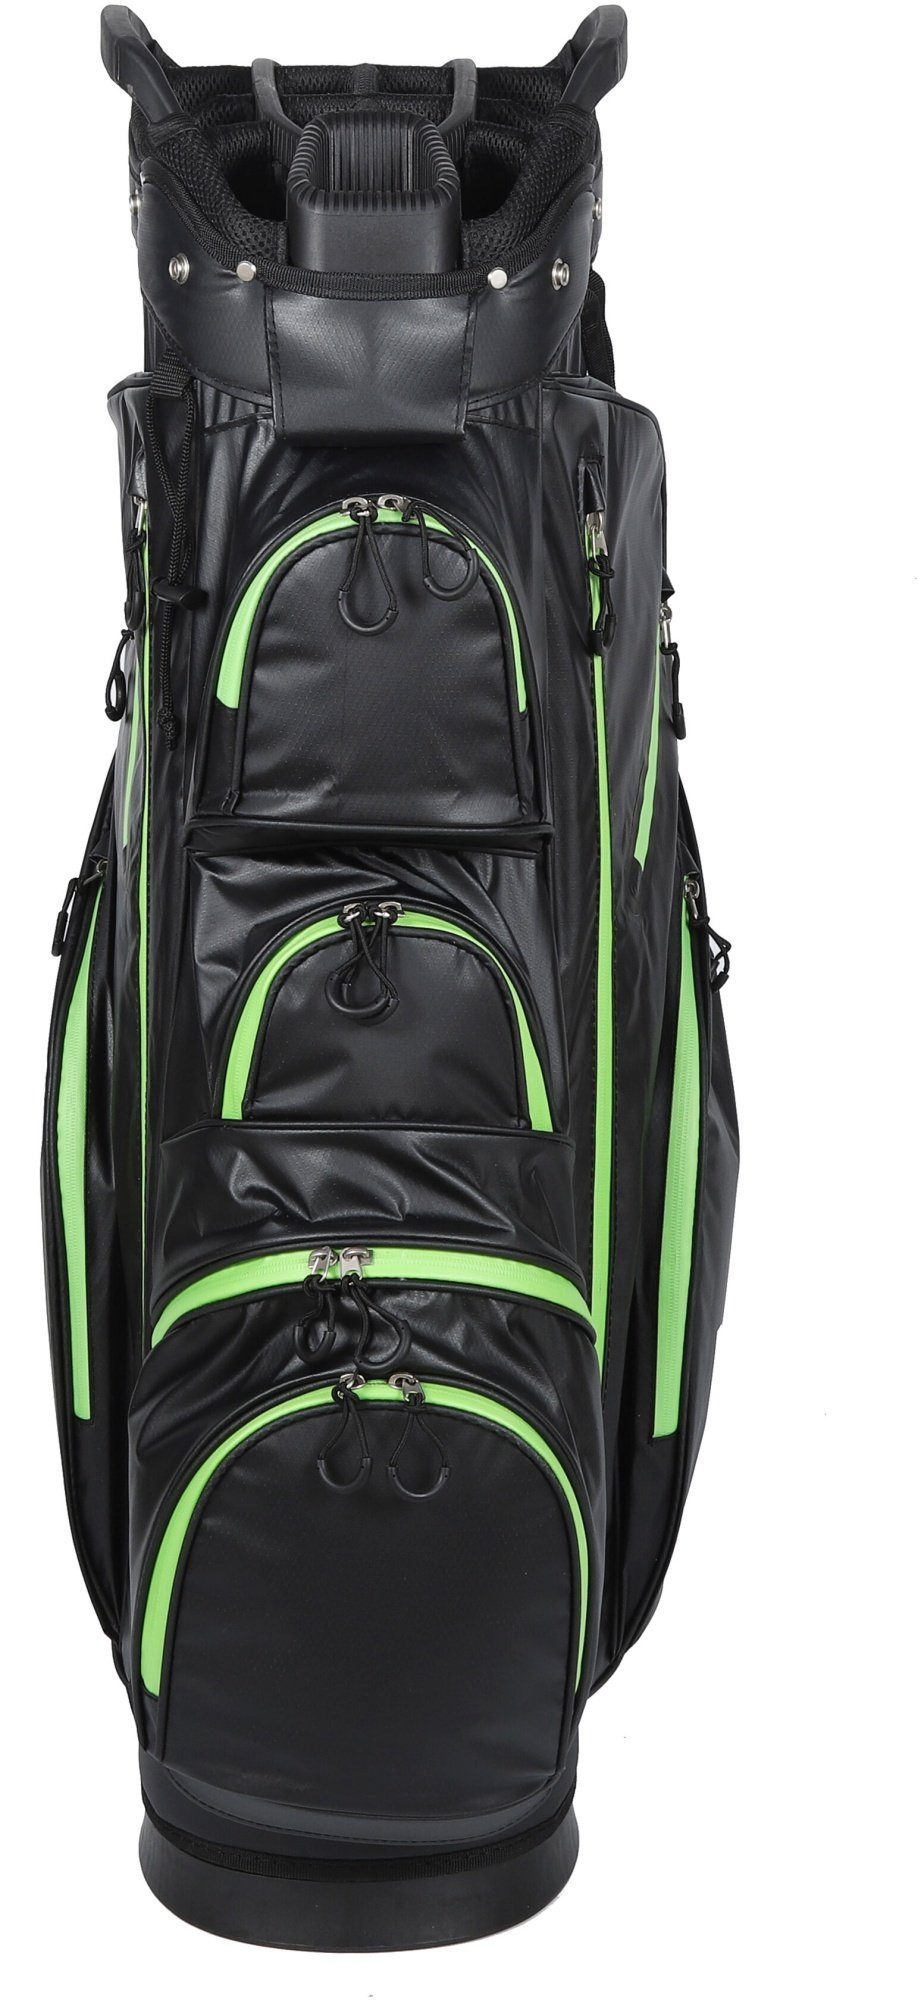 MK Golf Golftrolley Equipment Tour Grün wasserdicht Solid Golftasche, + - MK Trolleybag Golf Golfbag